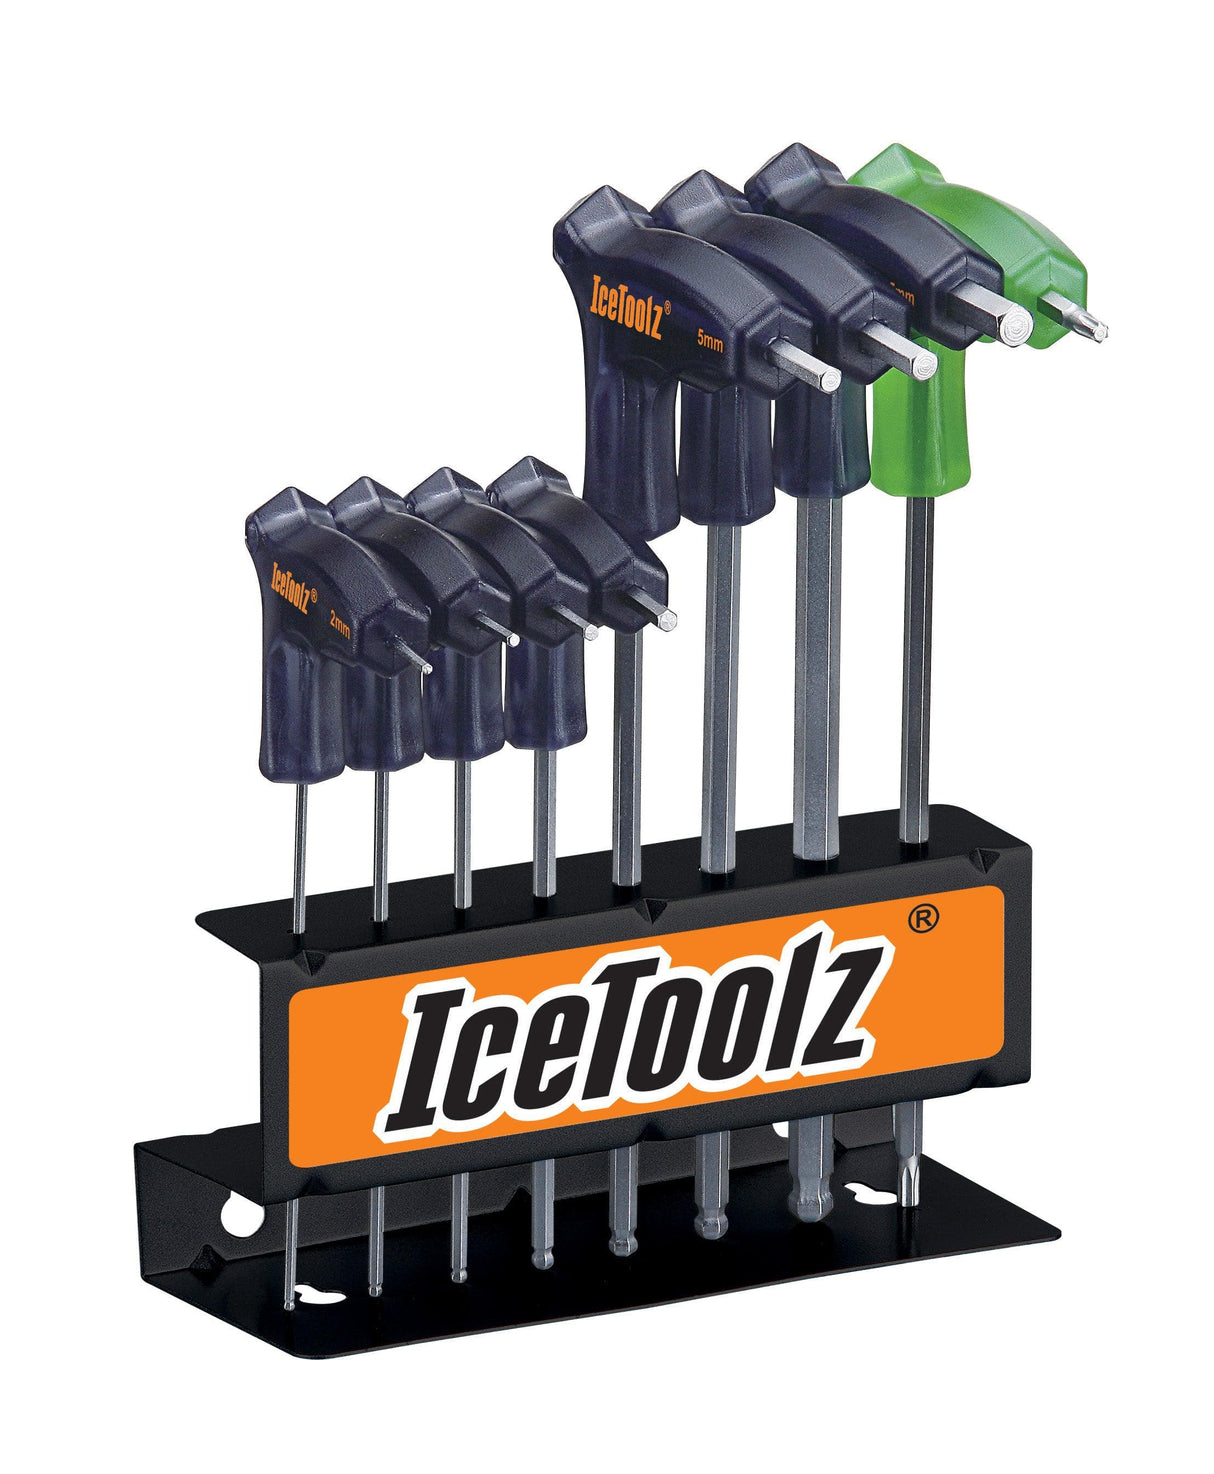 IceToolz Pro Shop Hex and Torx Key Set